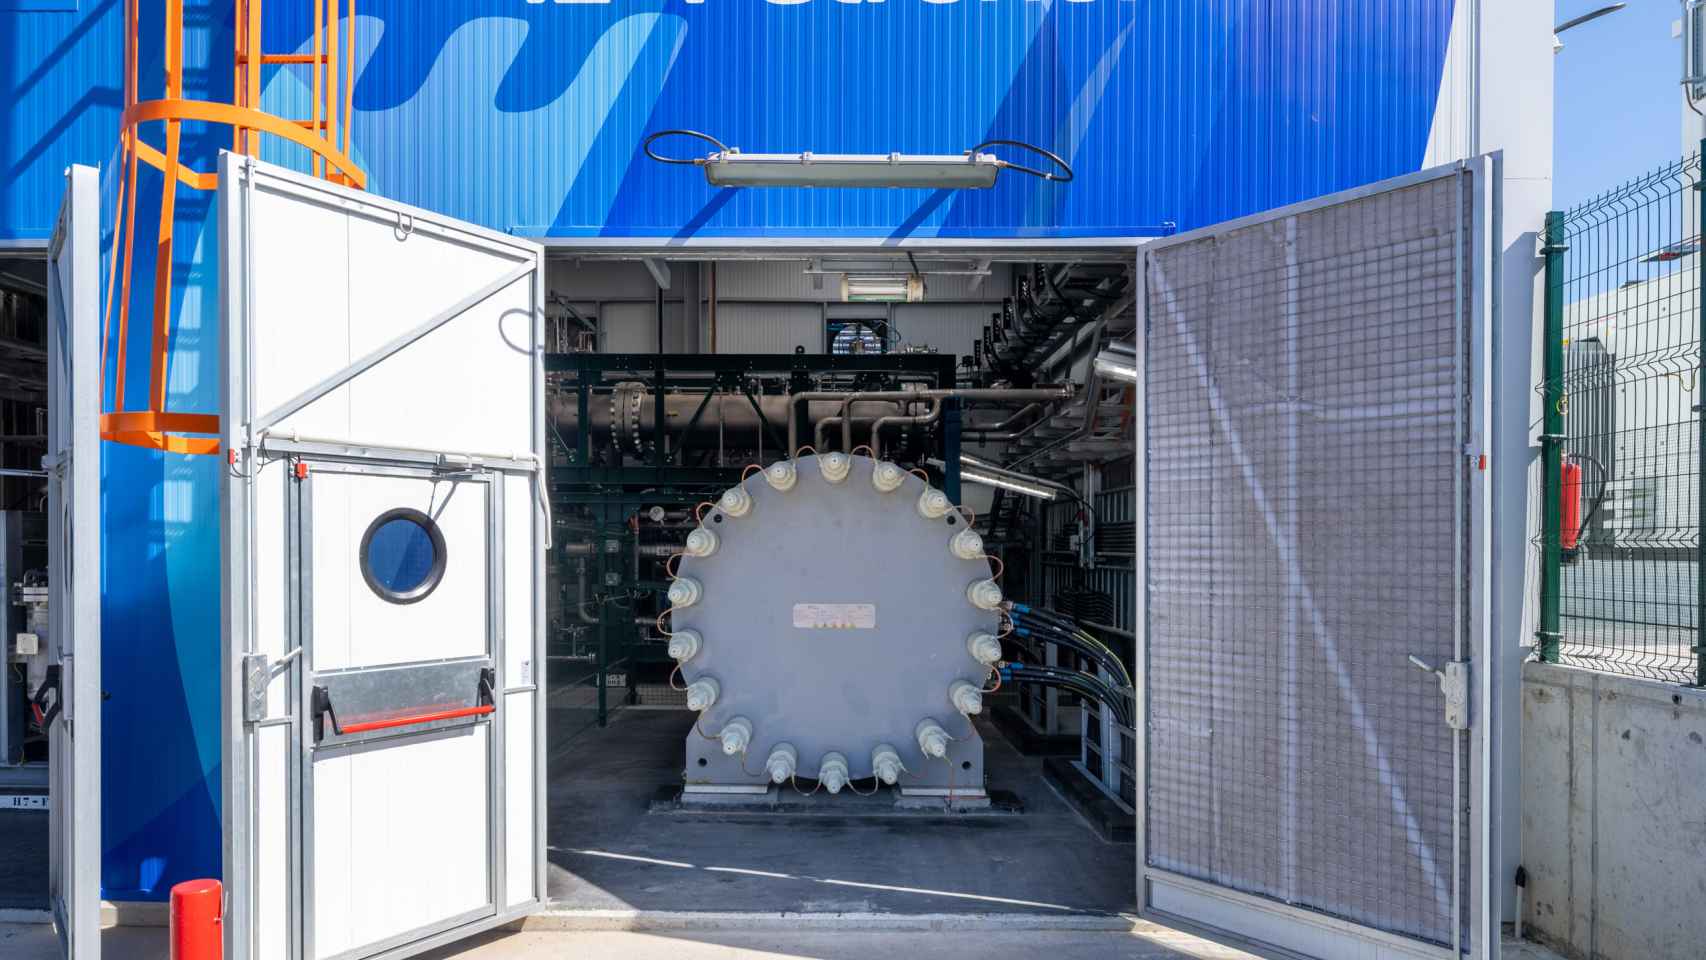 Electrolizador de 2,5 kW de potencia puesto en marcha por Petronor en Muskiz.